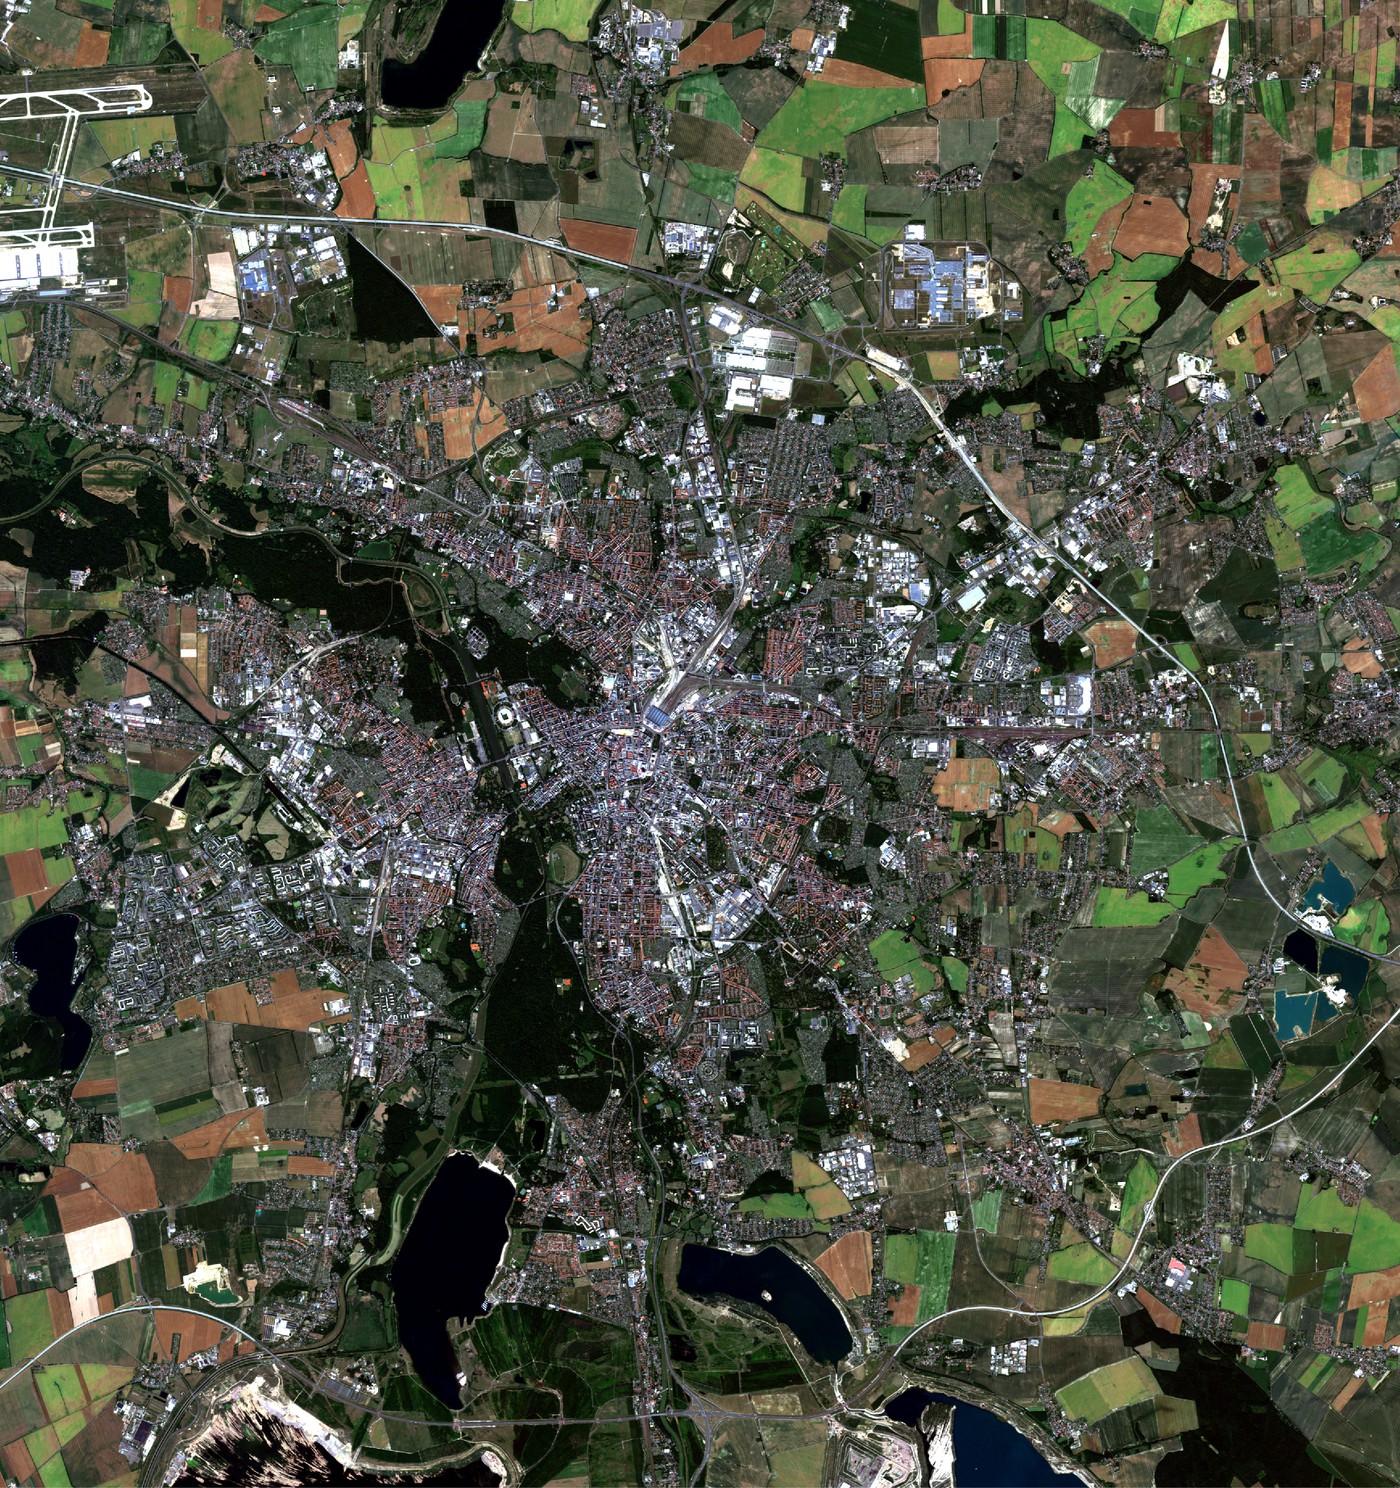 Abbildung 3: Bildausschnitt (vergrößerte Darstellung von Abbildung 2) aus einer RapidEye Satellitenszene des Inventurgebietes „Leipzig“ vom 27.6.2011 in RGB-Darstellung (R: Rot, G: Grün, B:Blau) der Kanäle 3, 2, 1 (Echtfarbdarstellung)